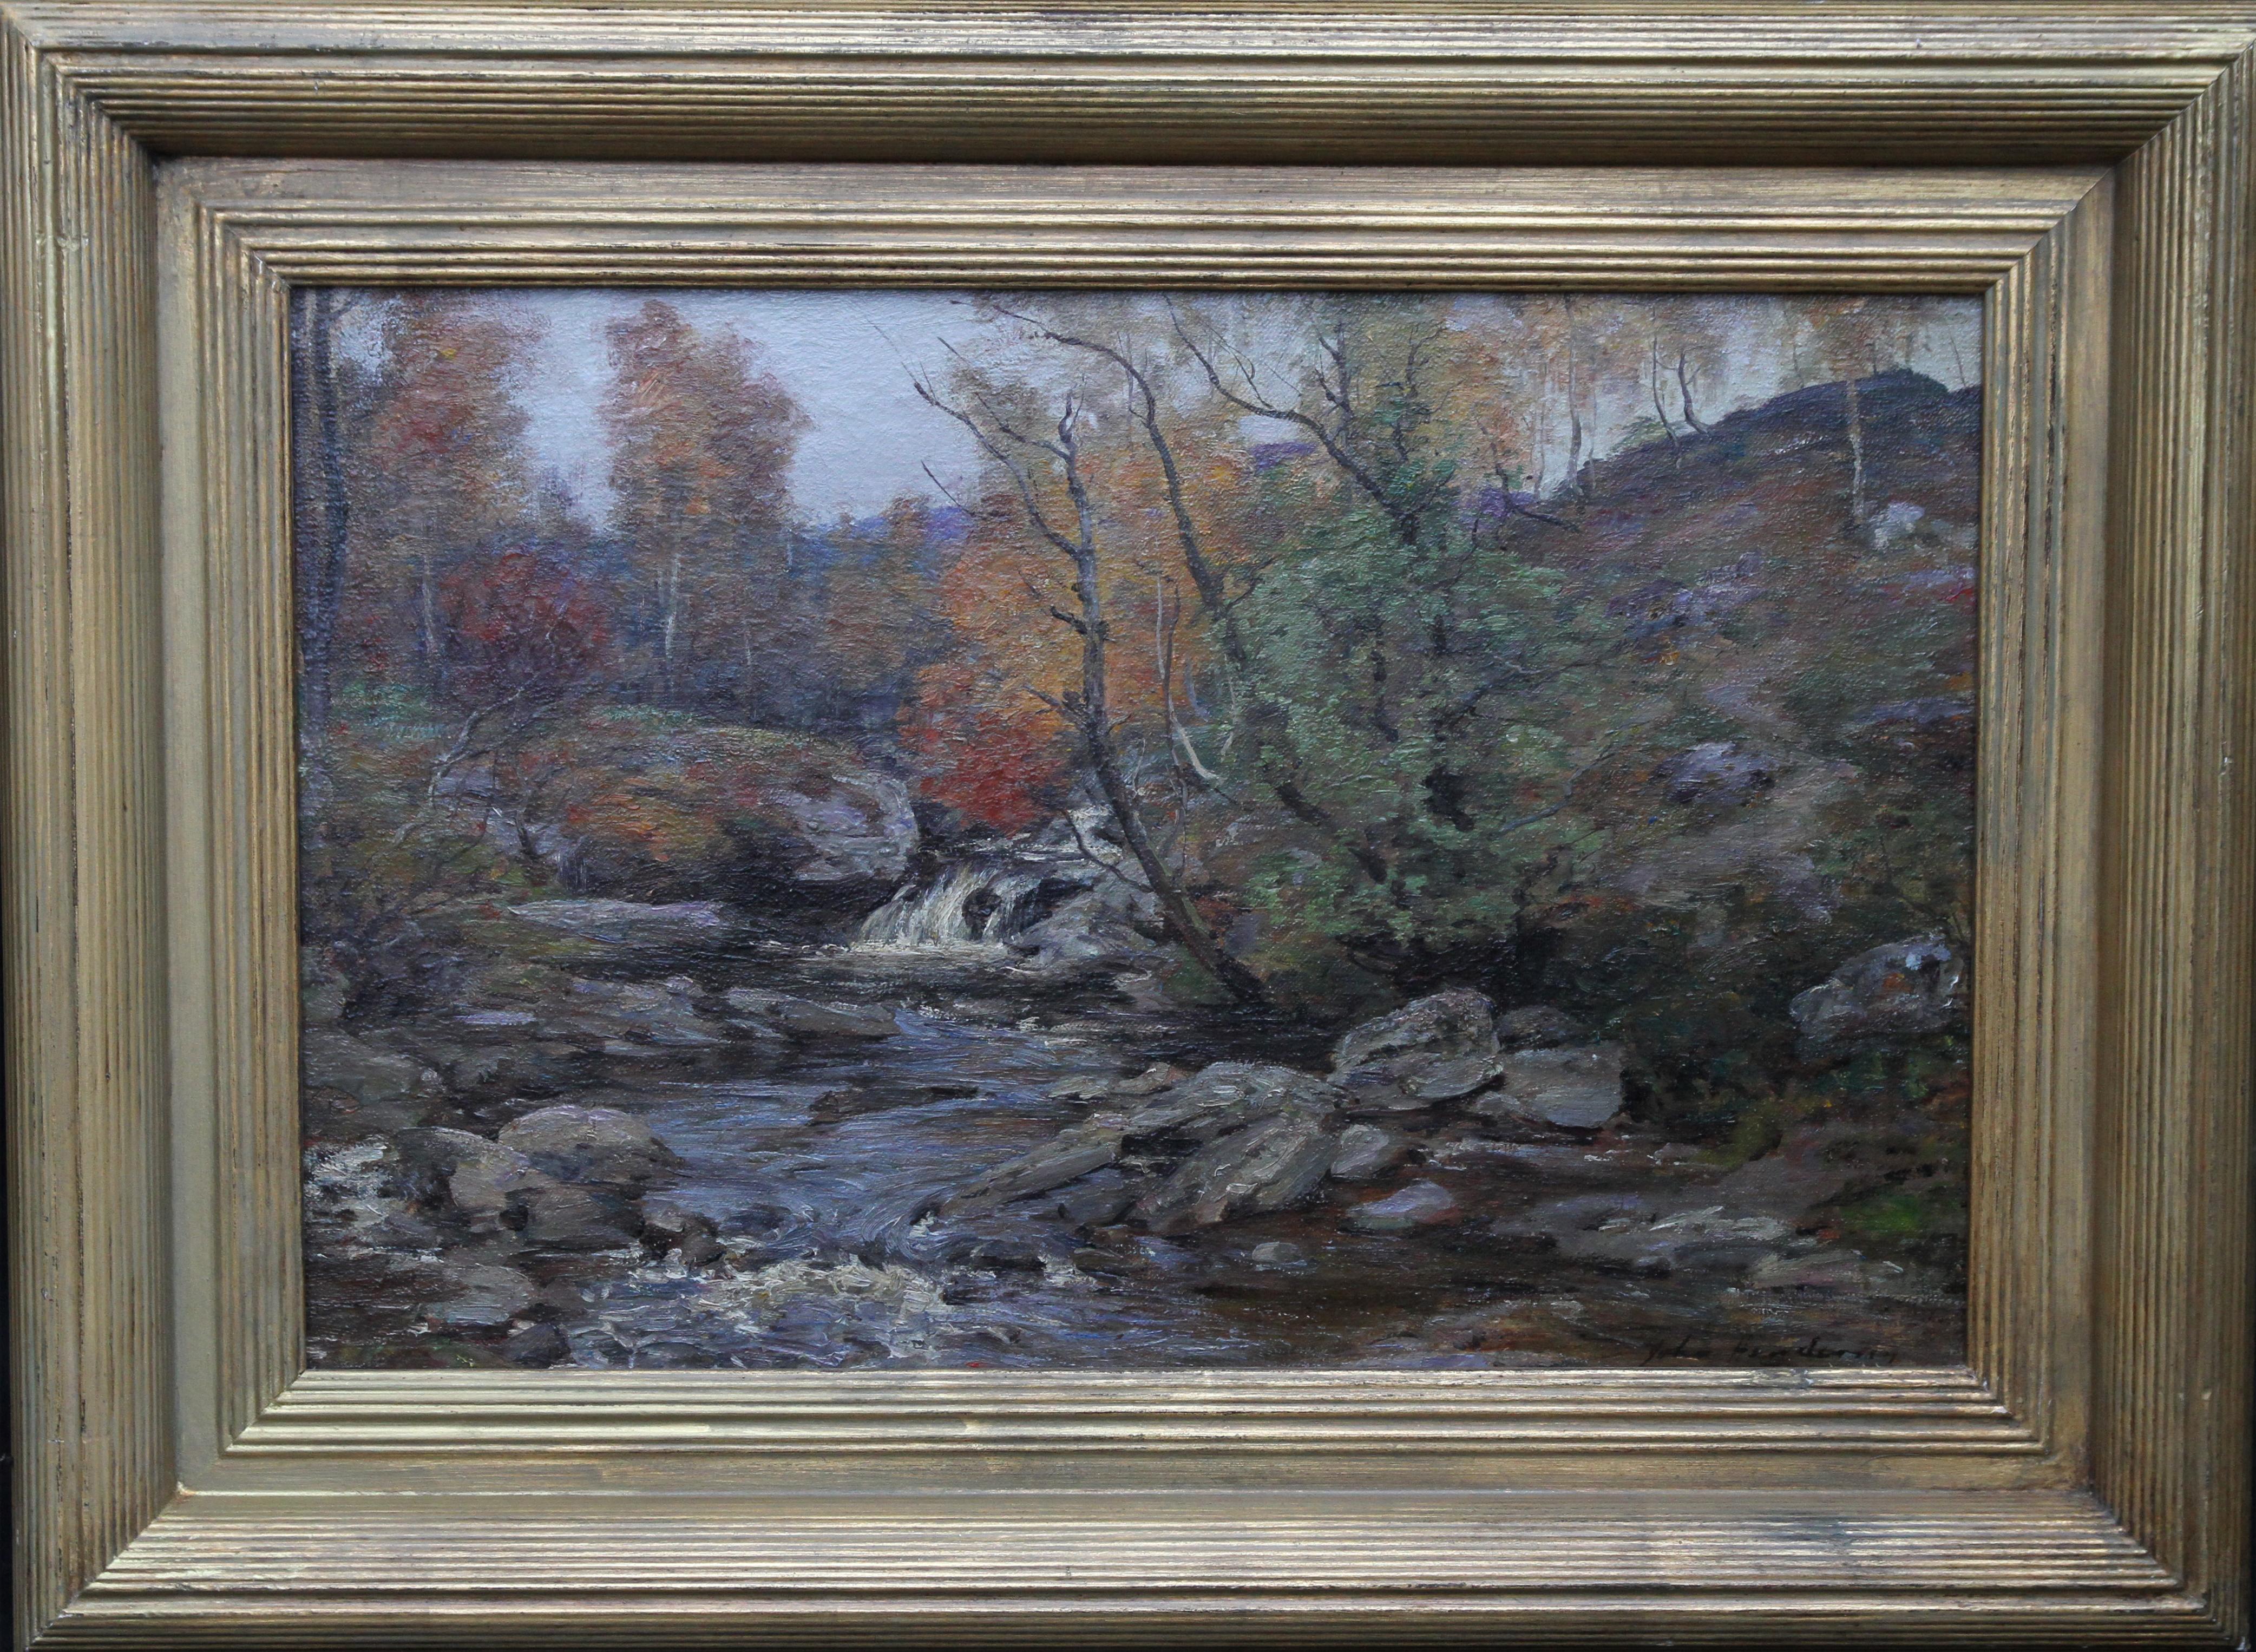 Landscape Painting John Henderson - Autumn in the Glen - Peinture à l'huile d'un paysage fluvial impressionniste écossais